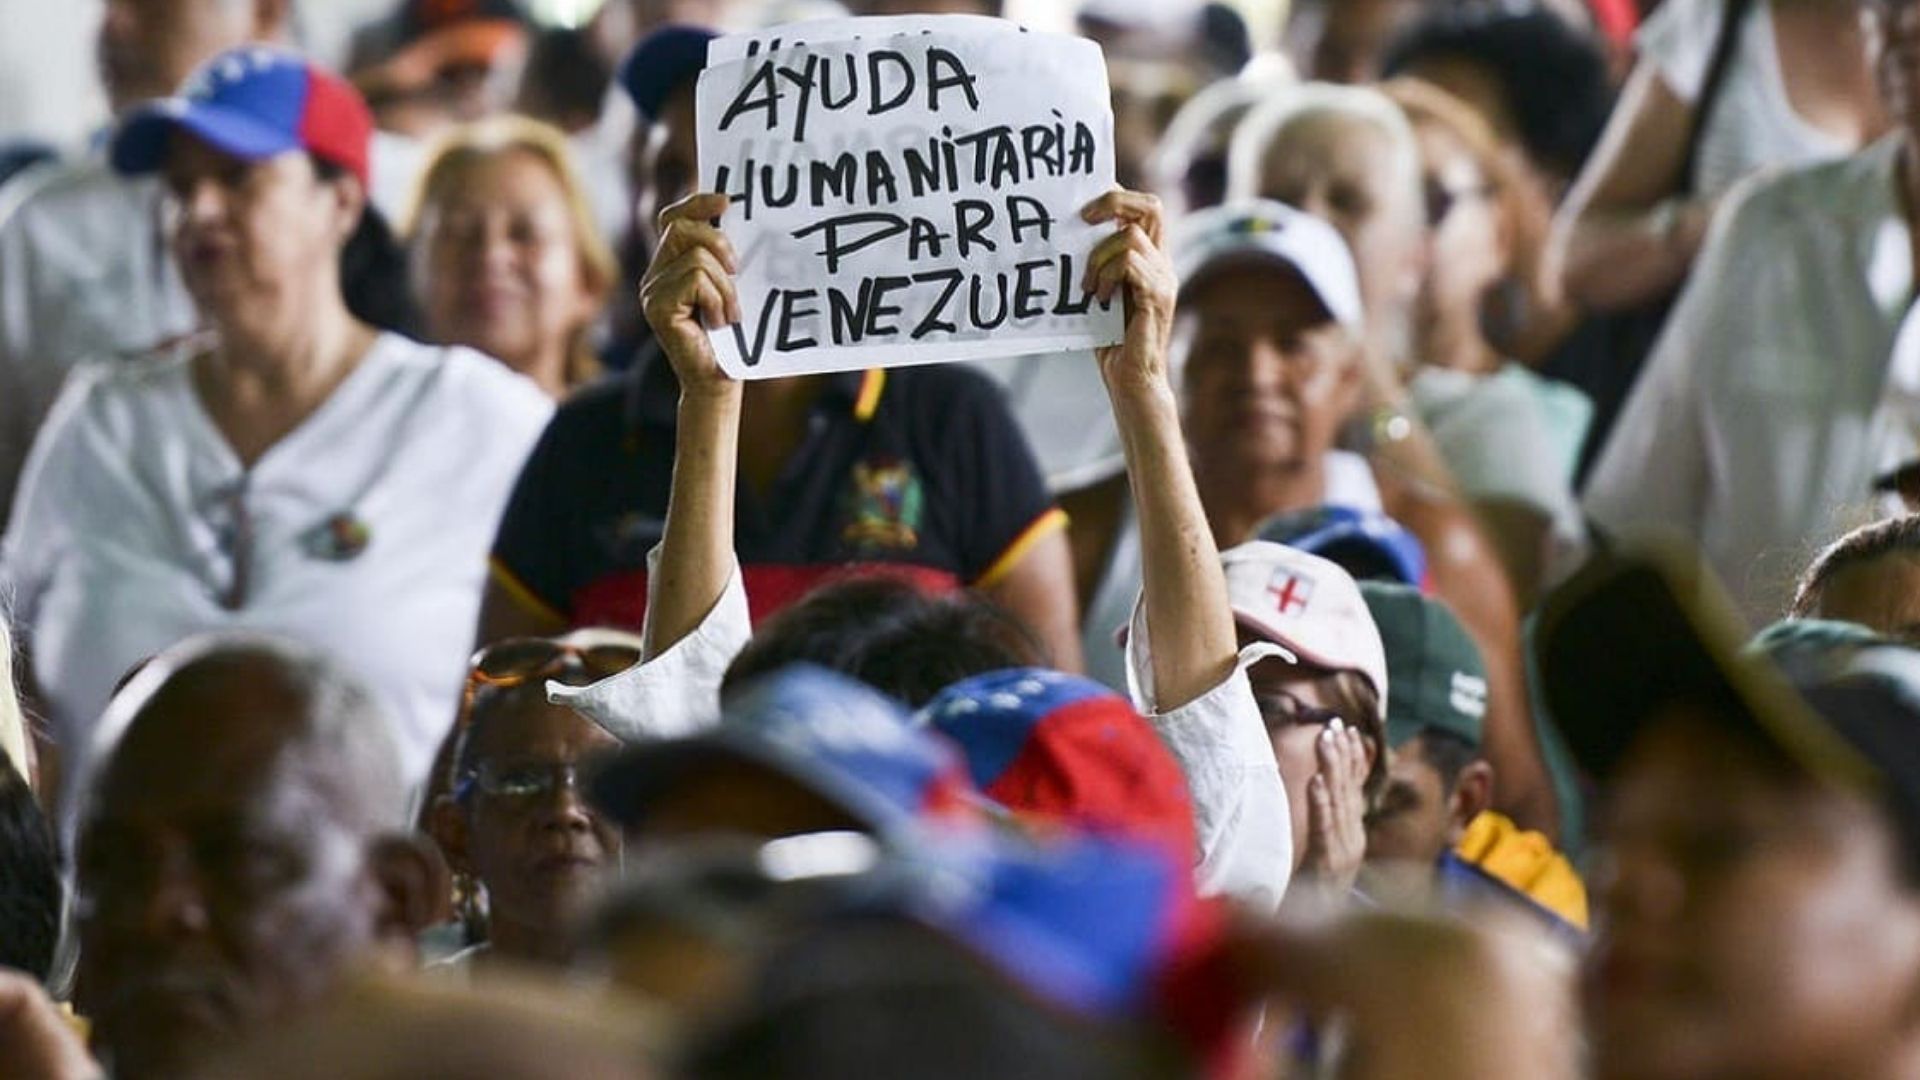 ONU aprueba $8 millones para atender crisis humanitaria en Venezuela